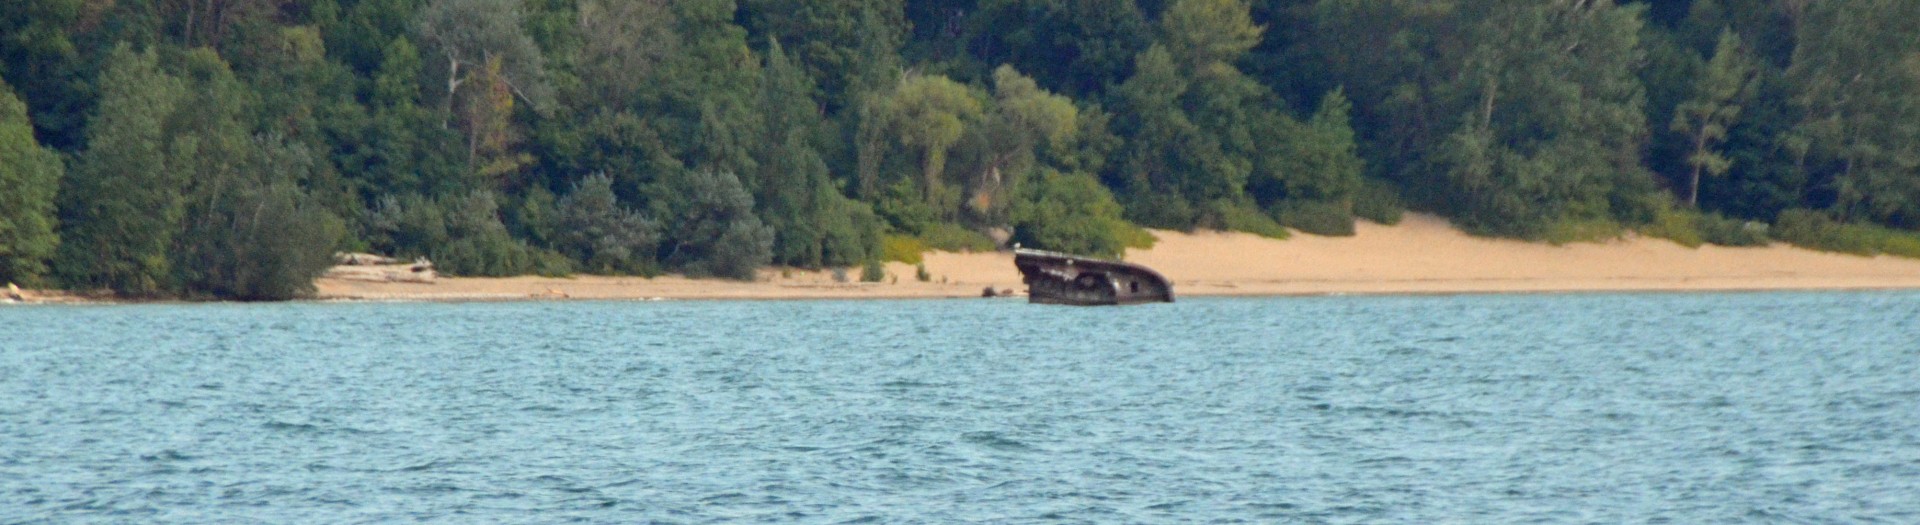 Sunken Boat, Lake Huron